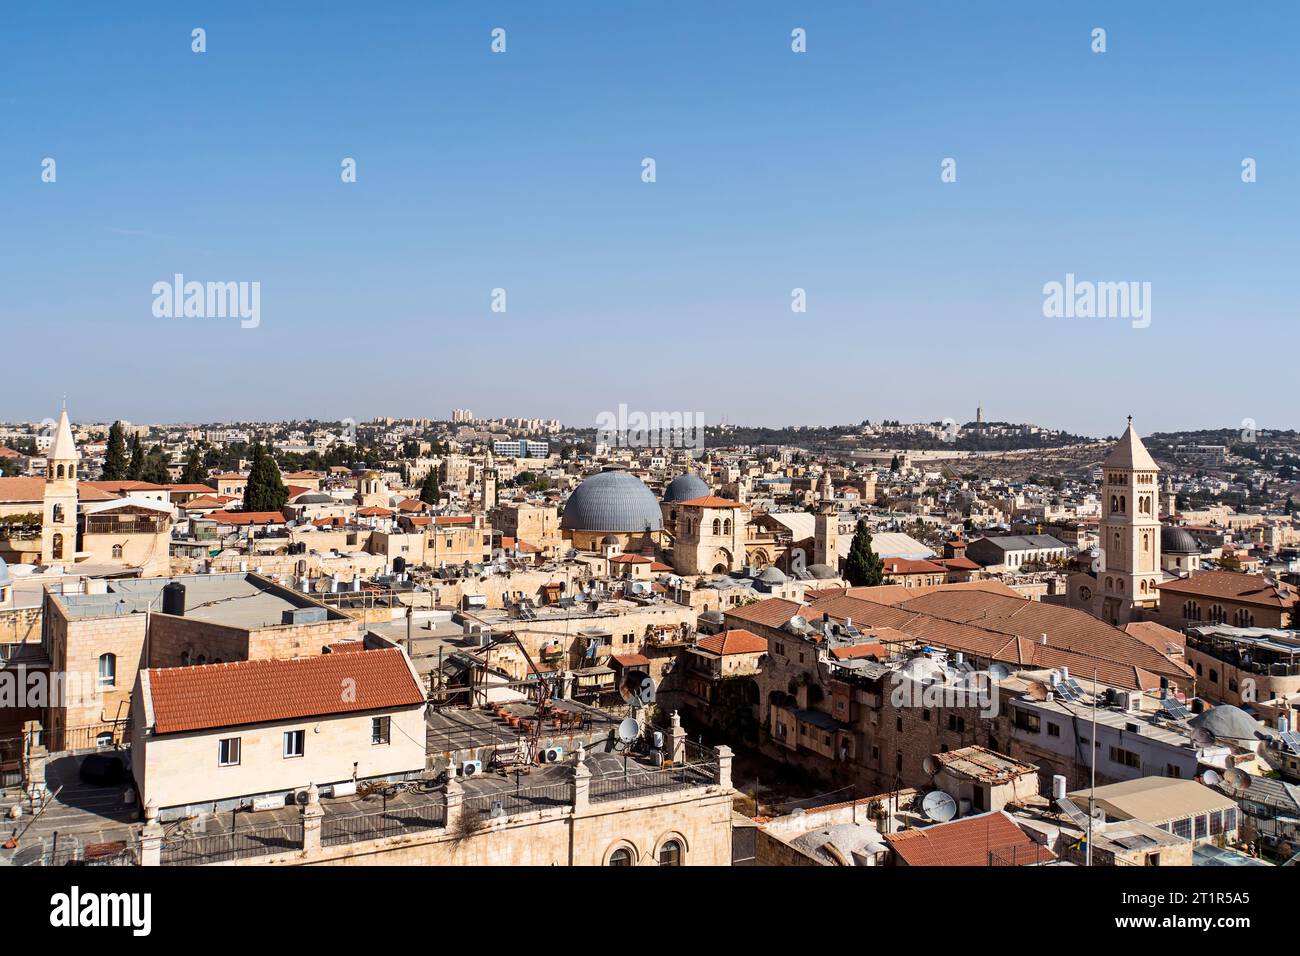 Dächer von Gebäuden im alten Teil Jerusalems, der alten Hauptstadt Israels. Aus der Vogelperspektive einer Altstadt. Reisen in Israel, Touren in Jerusalem. Cityscap Stockfoto